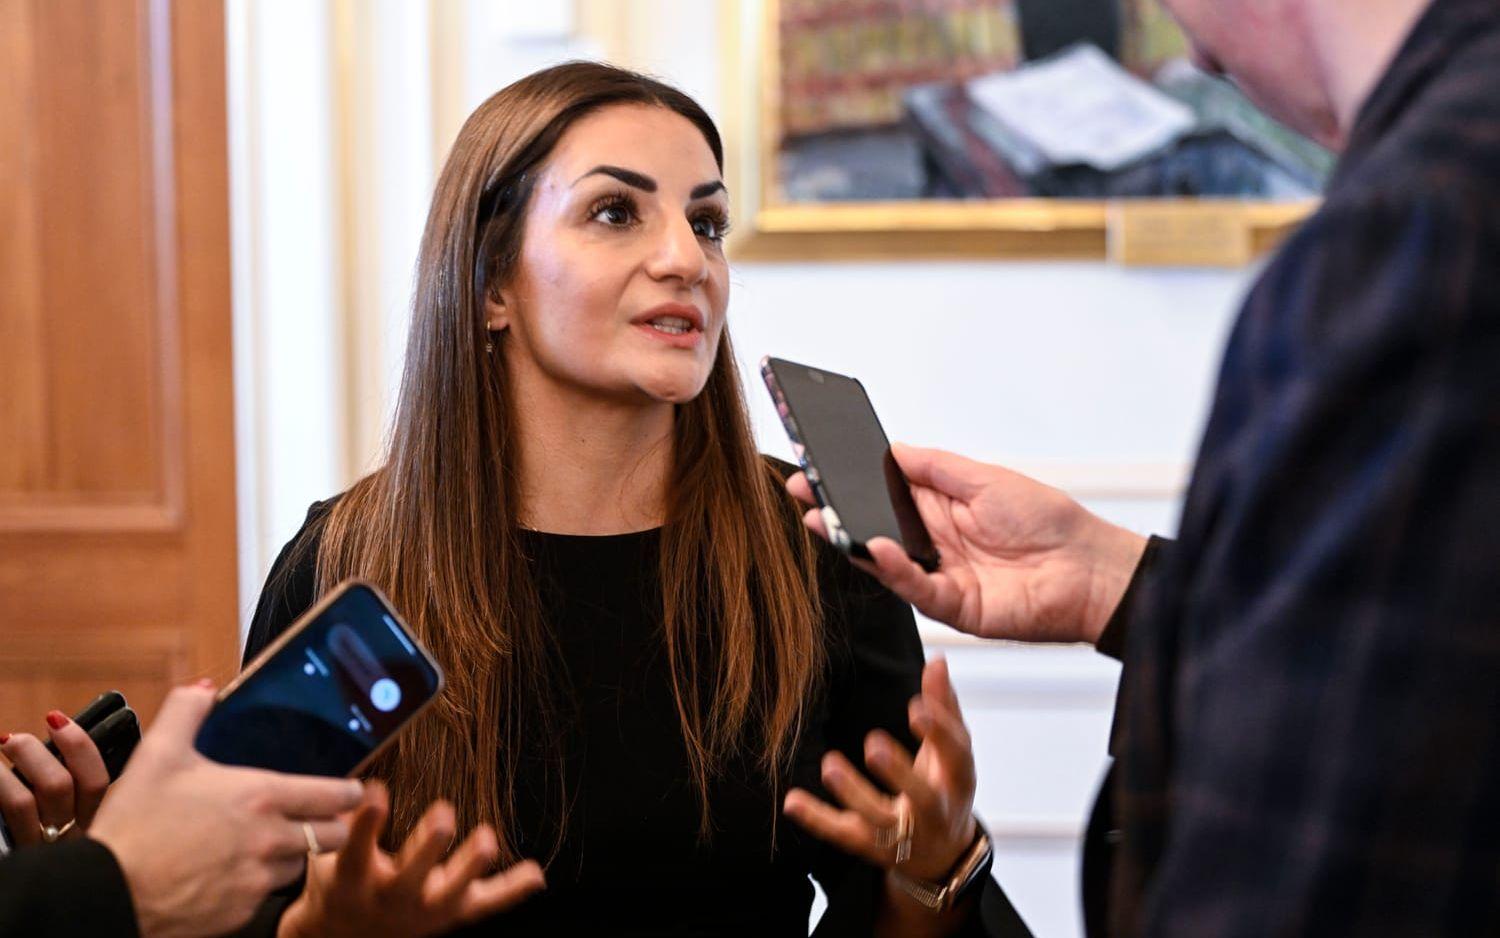 Parisa Liljestrand (M) blir kulturminister i Ulf Kristerssons regering. Hon har tidigare varit kommunalpolitiker i Vallentuna.